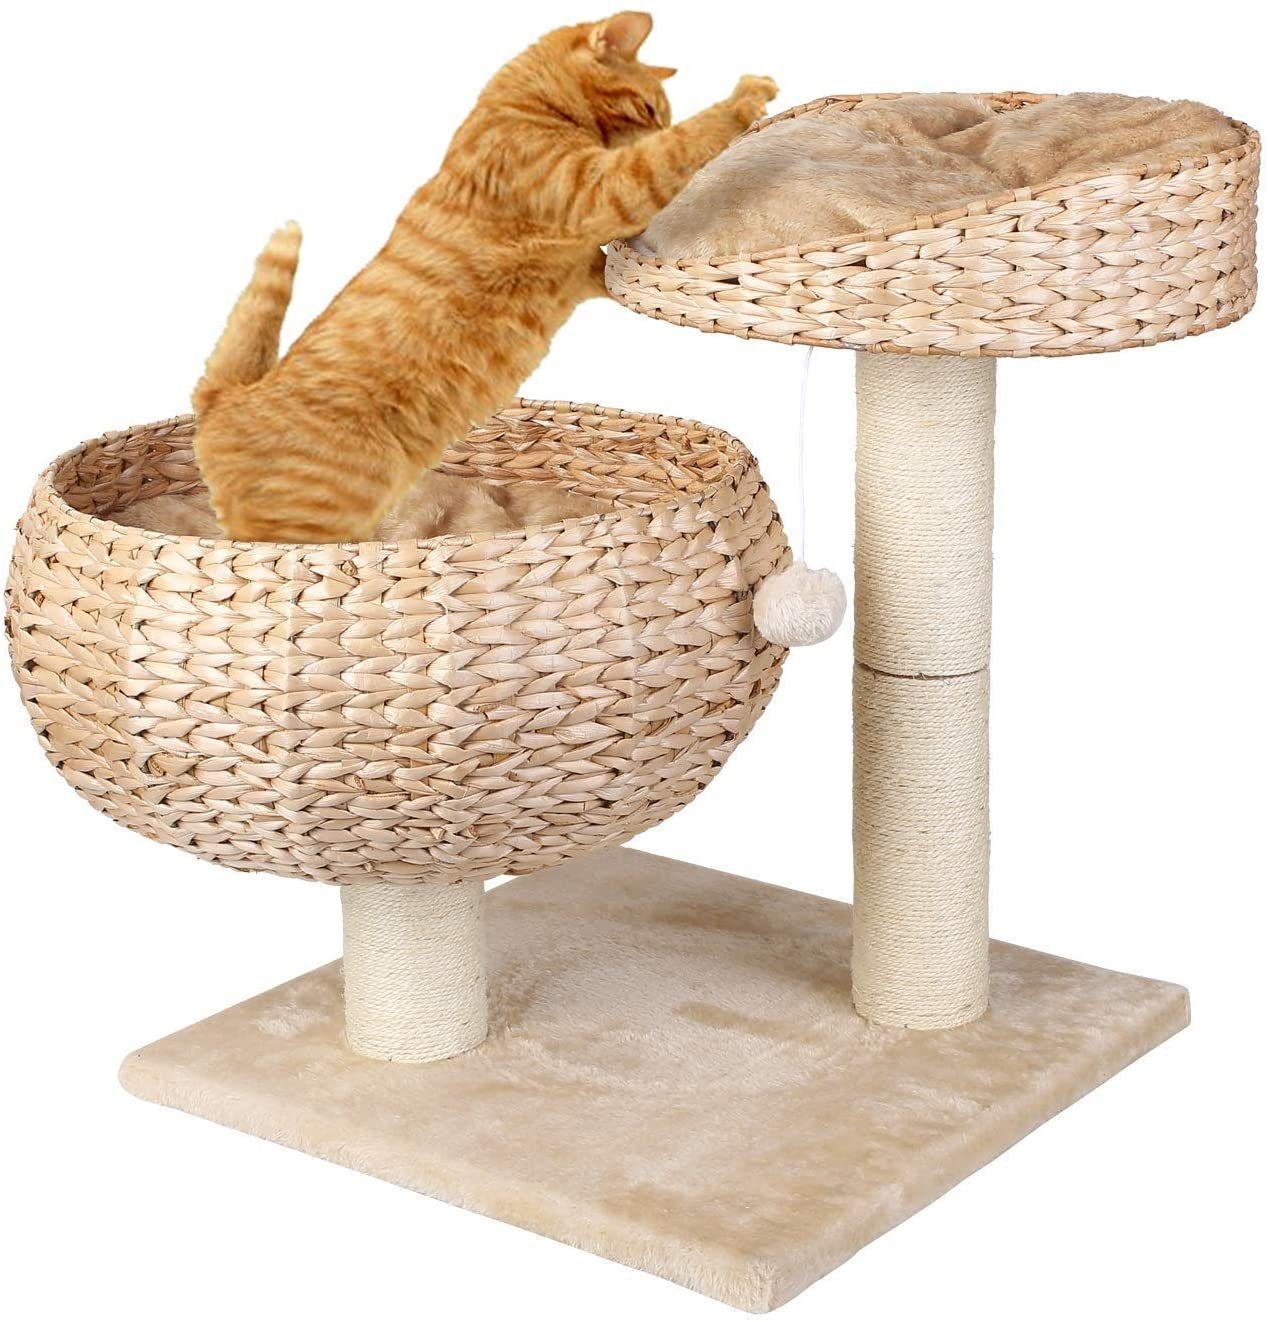 Pedy Kratzbaum, Katzenbett Stabiler Kratzbaum mit Kratzbett Robuster  Kletterbaum für Katzen Katzenkratzbaum Katzenmöbel Katzenturm beige,mit 2  Kissen/Korb online kaufen | OTTO